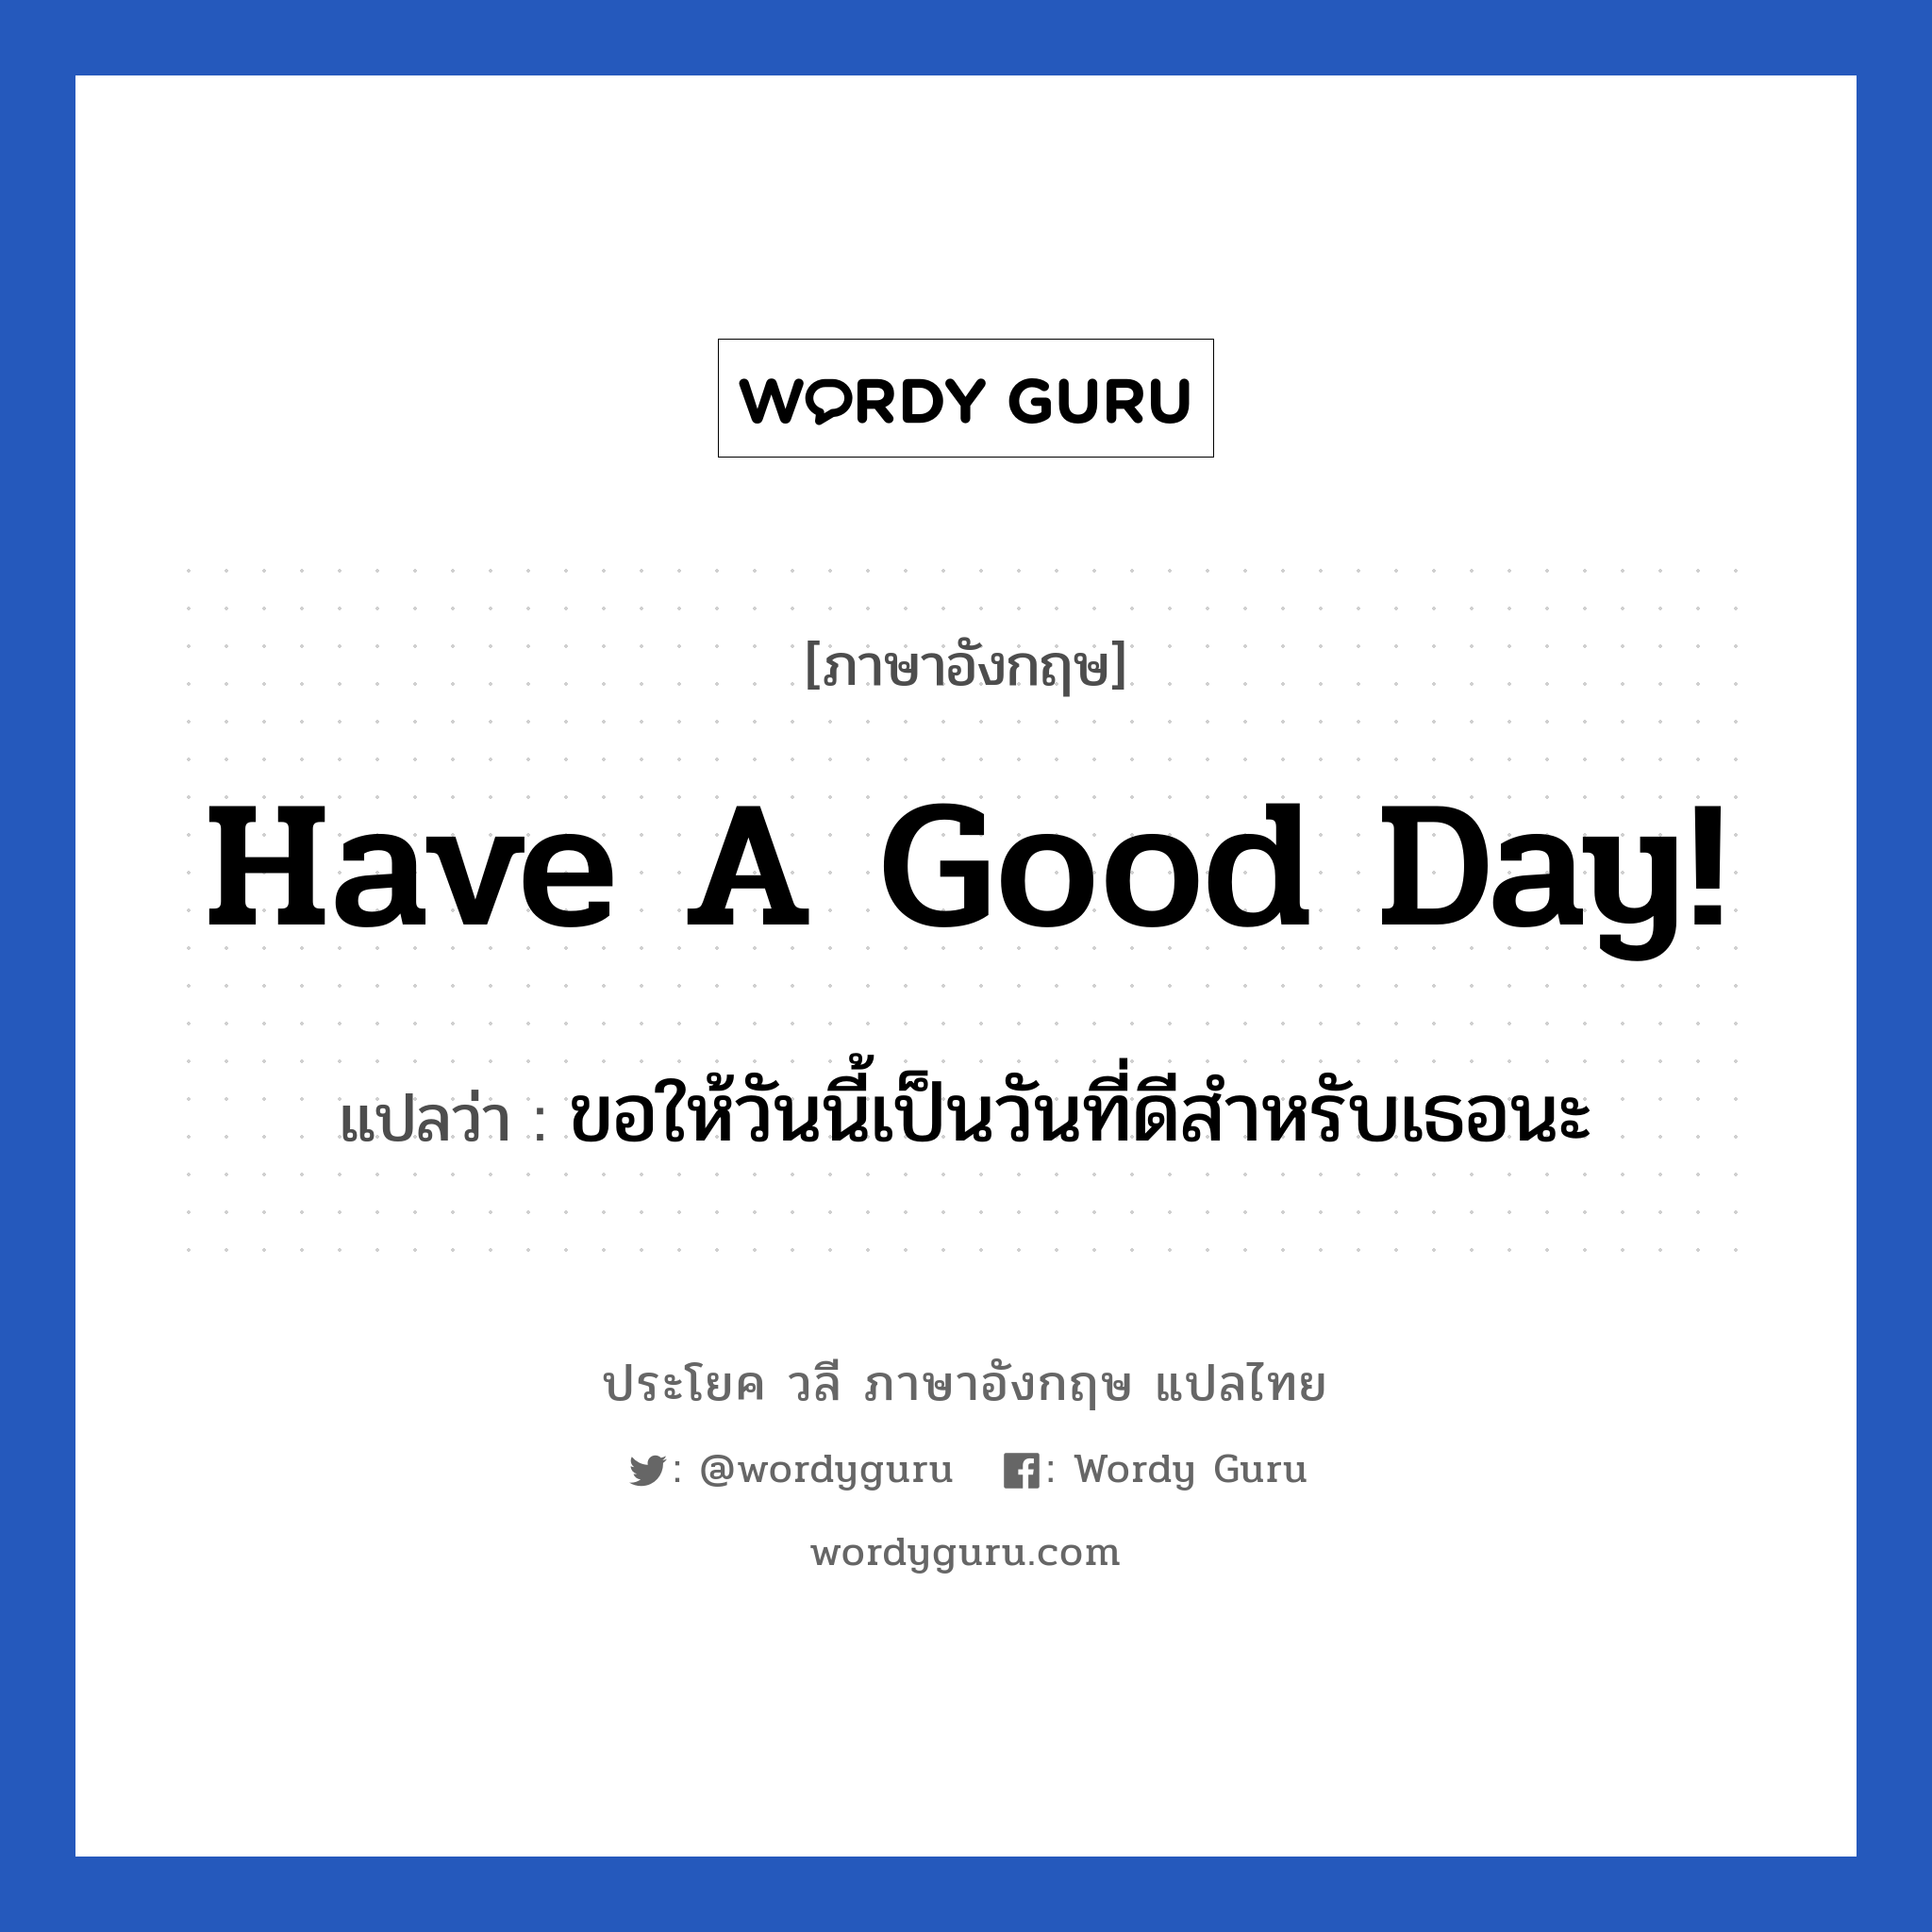 ขอให้วันนี้เป็นวันที่ดีสำหรับเธอนะ ภาษาอังกฤษ?, วลีภาษาอังกฤษ ขอให้วันนี้เป็นวันที่ดีสำหรับเธอนะ แปลว่า Have a good day! หมวด ในที่ทำงาน